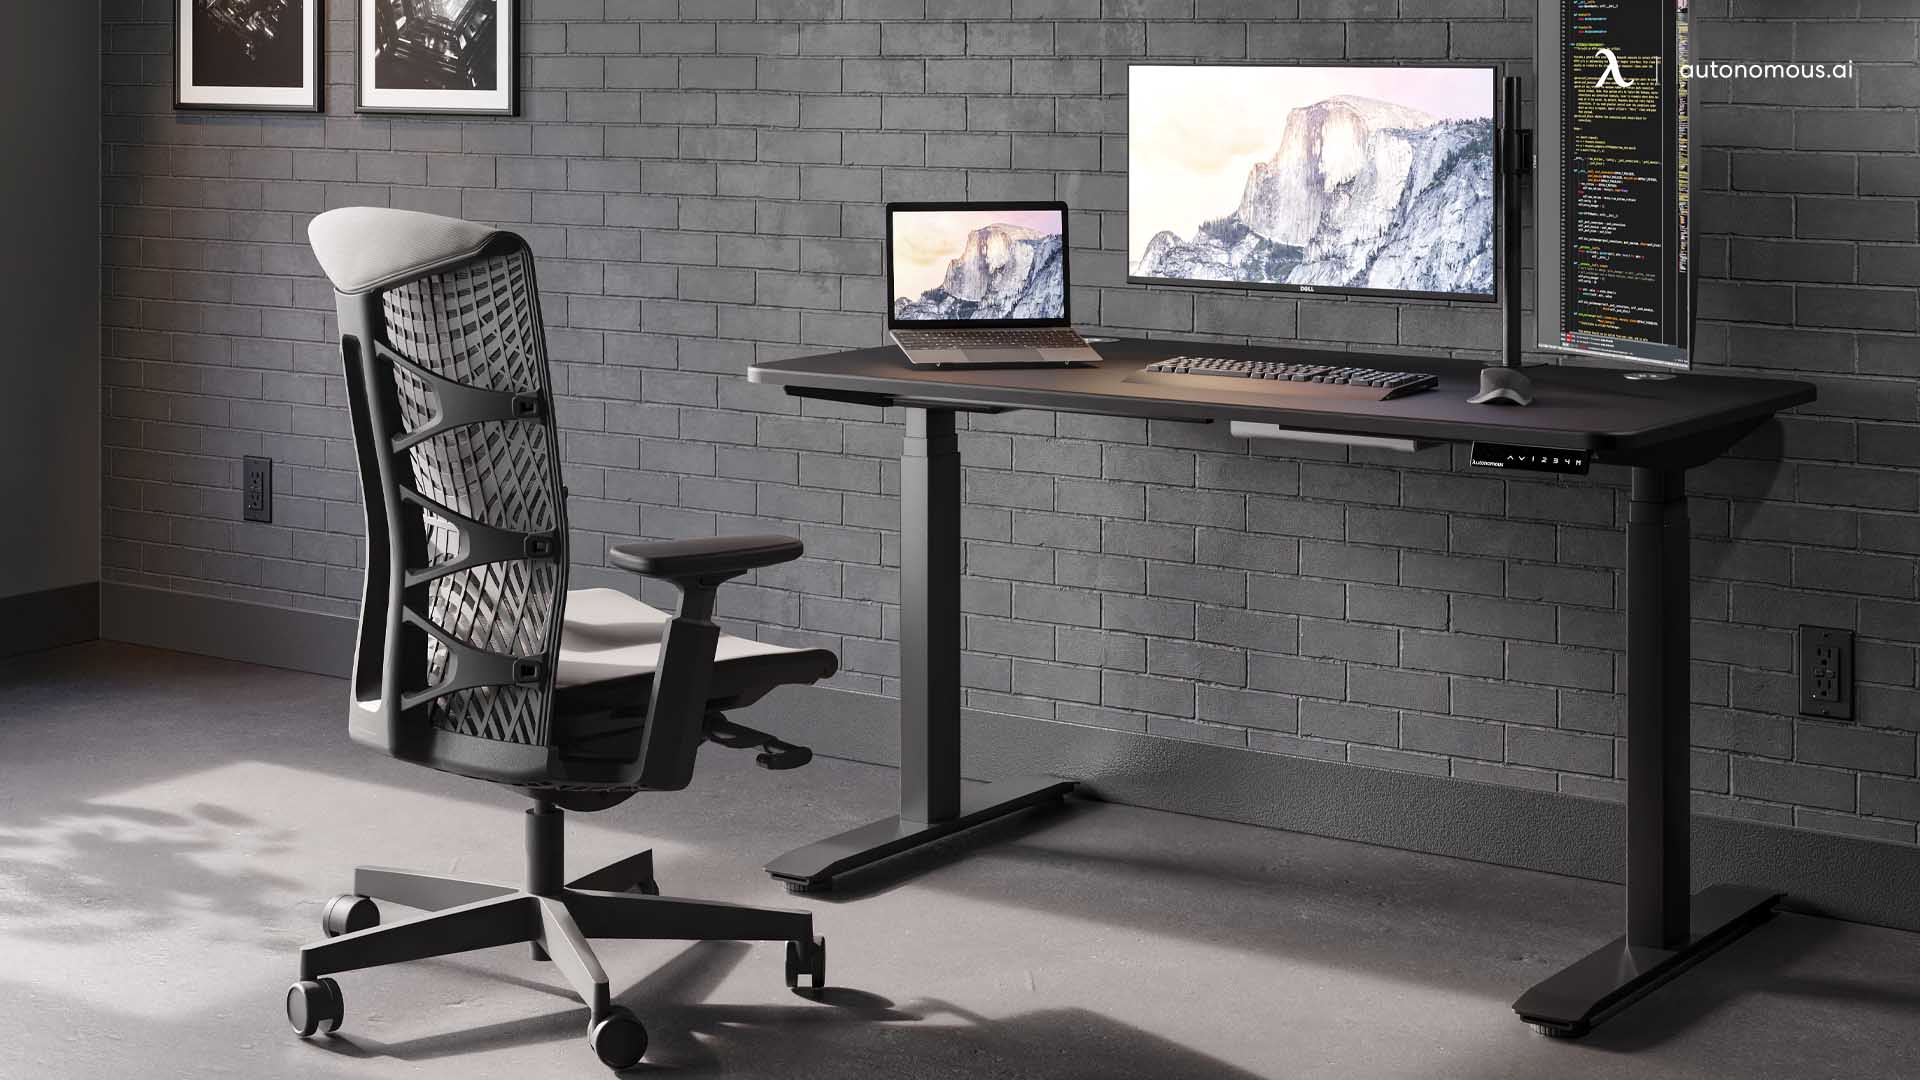 SmartDesk Pro adjustable home office desk